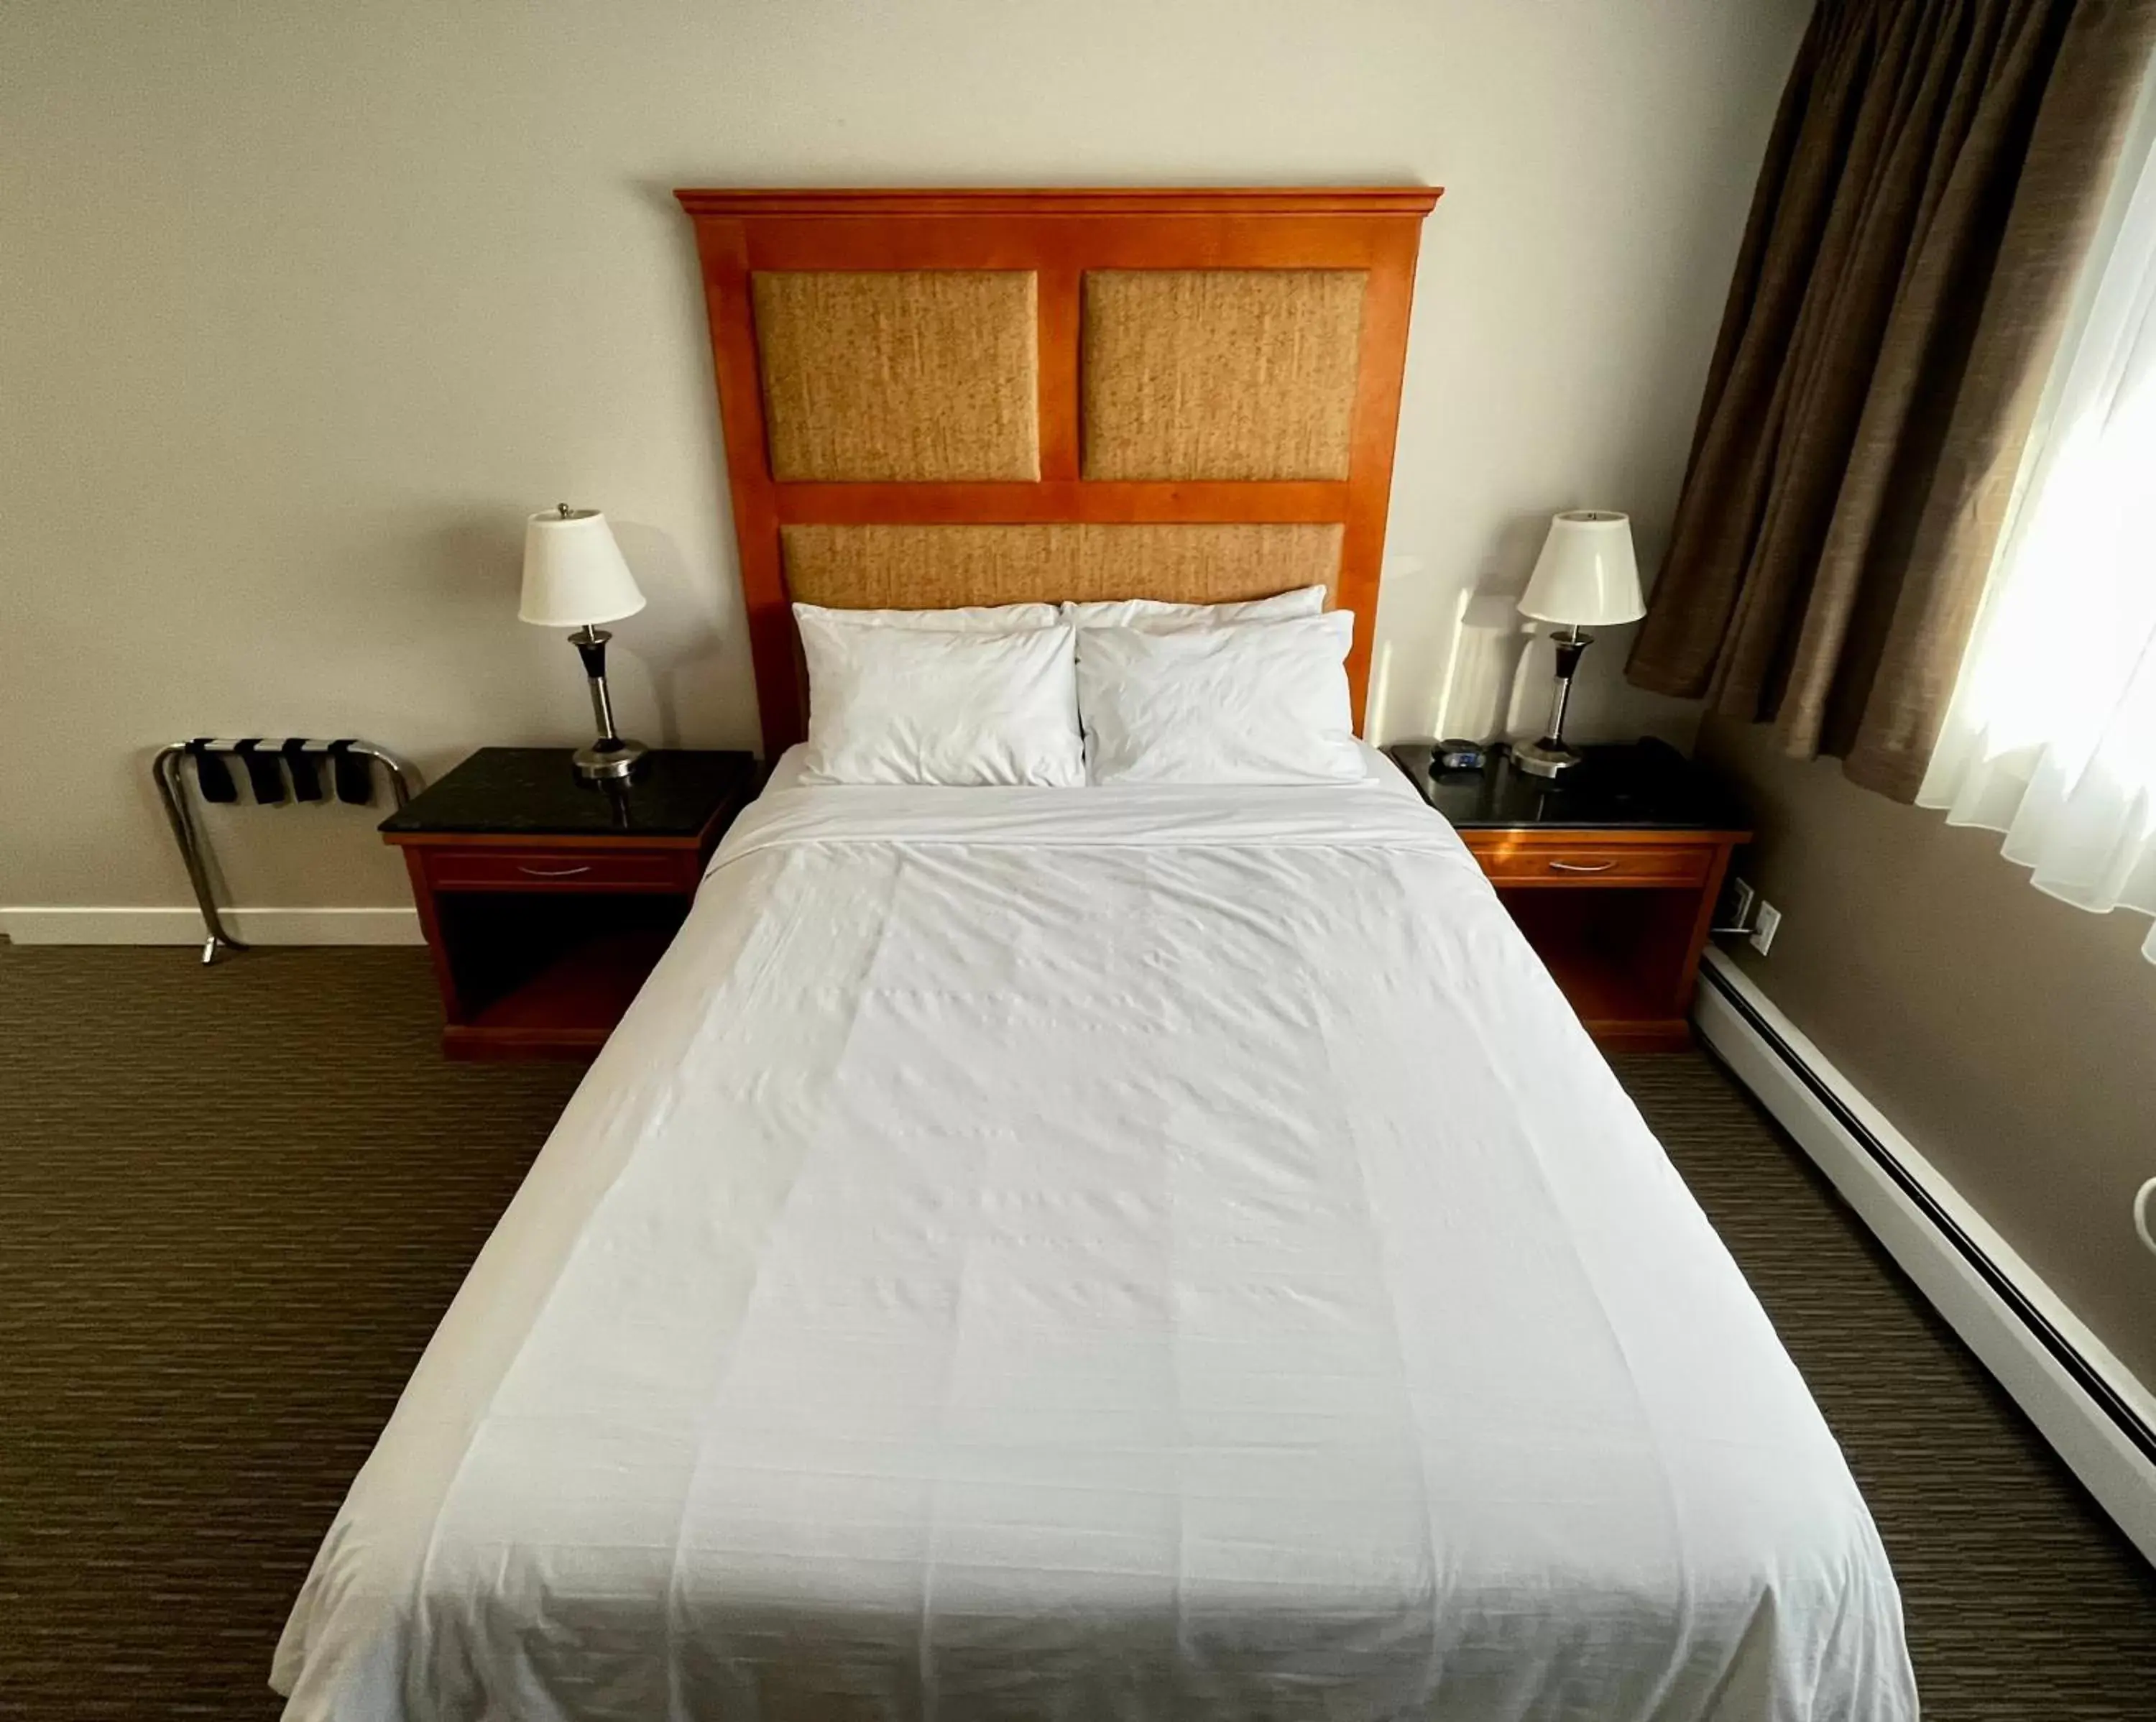 Bed in Anavada Inn & Suites - Prince George